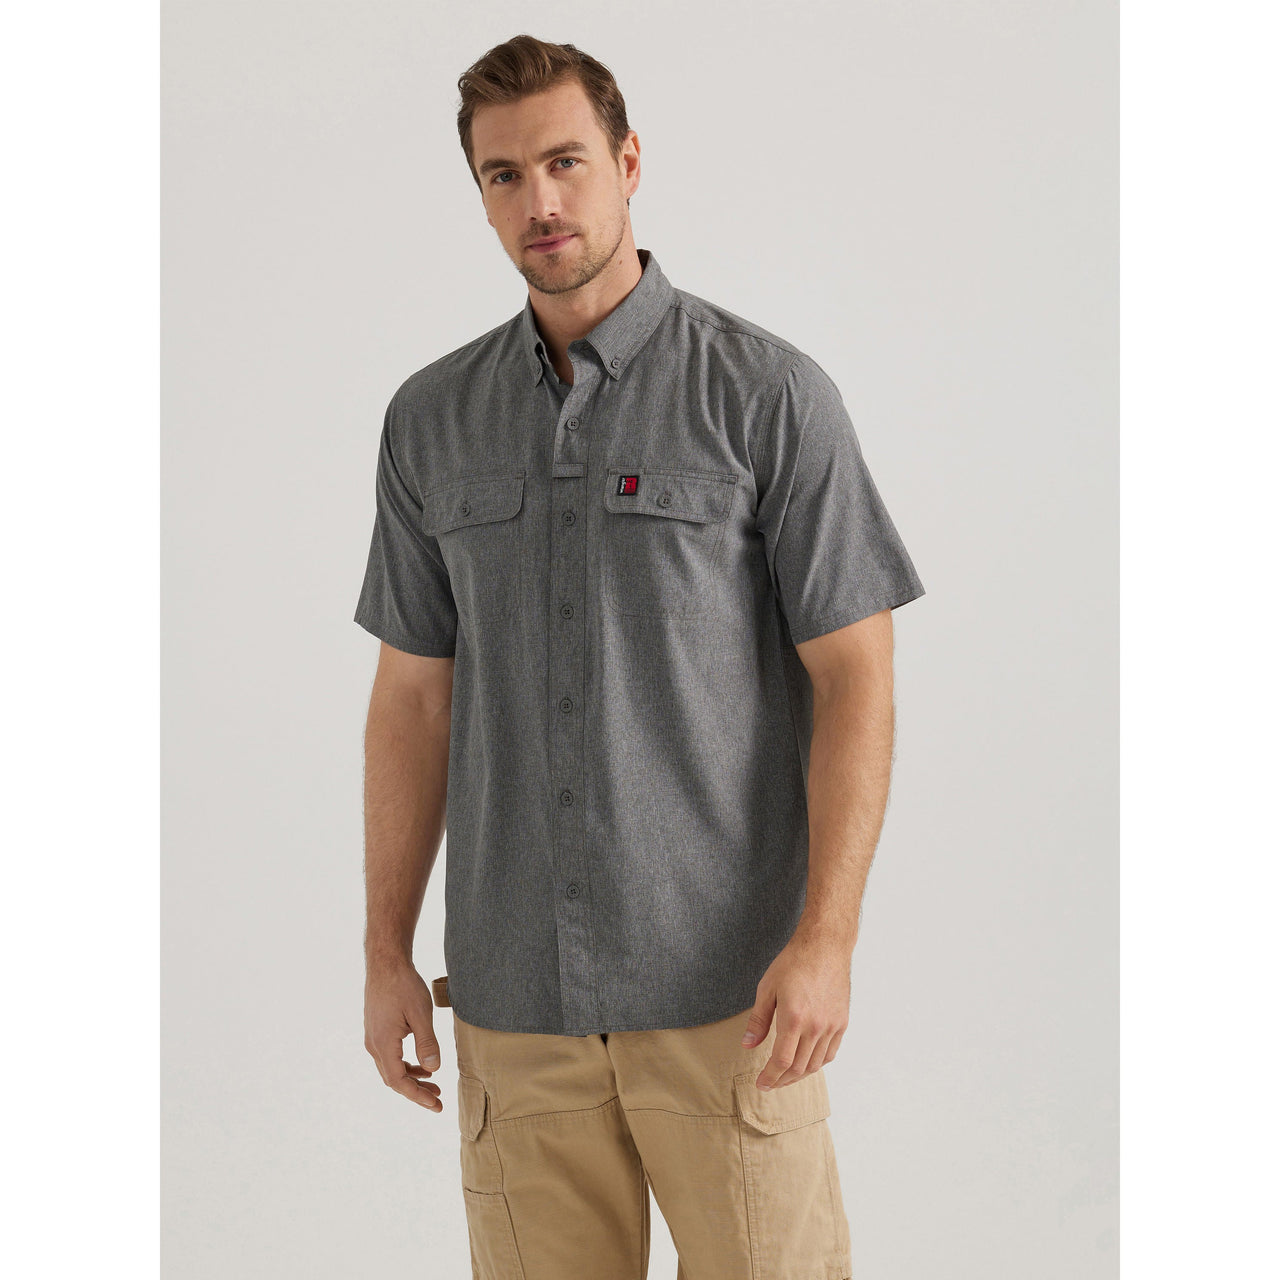 Wrangler Men's Riggs Short Sleeve Work Shirt - Charcoal